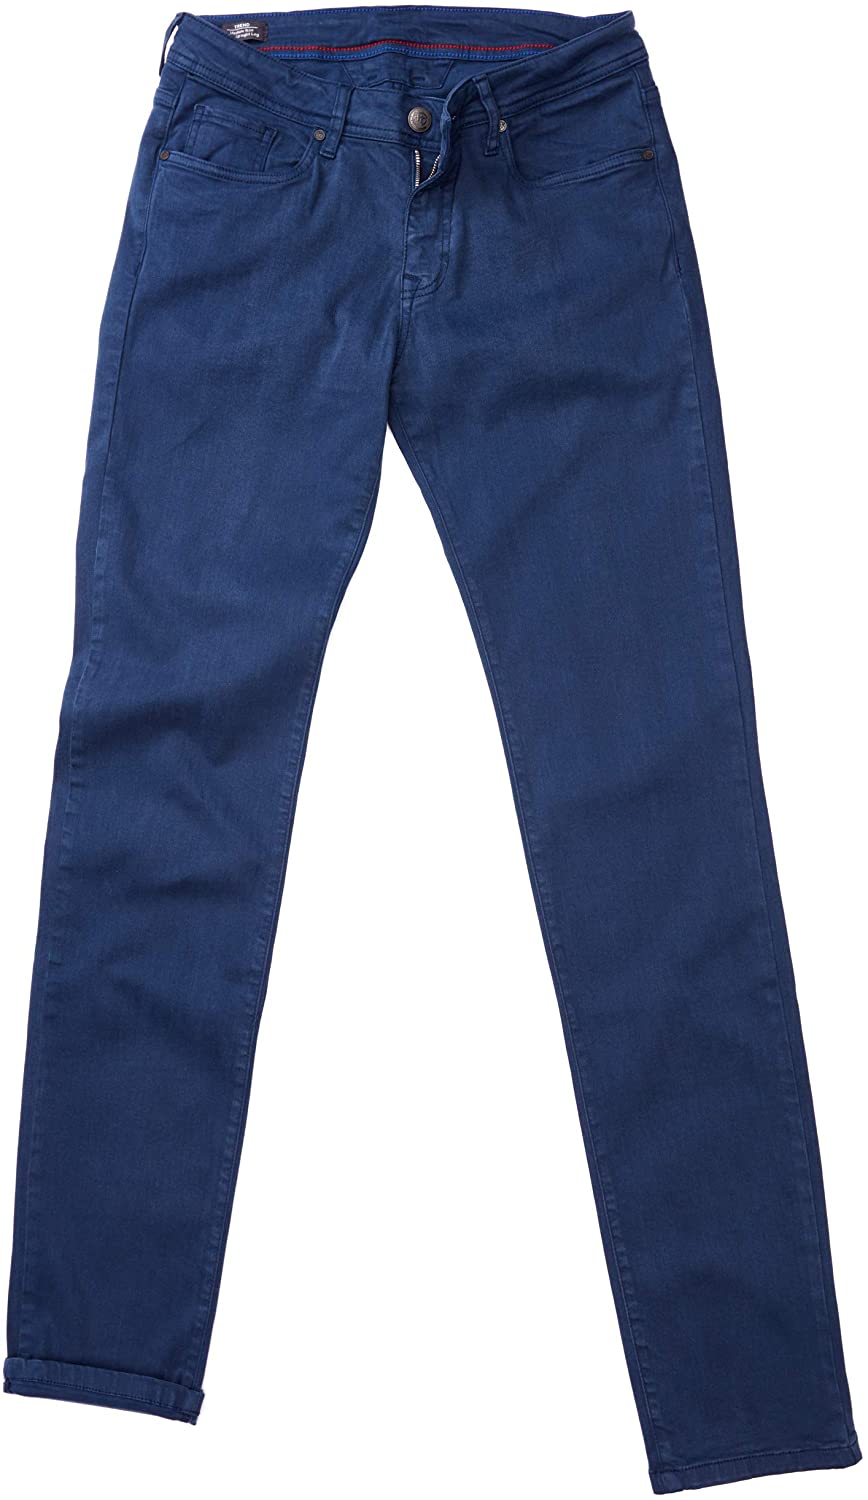 Pantalon bleu 5 poches coupe semi-ajustée - Le Roi Mauricien des Habits